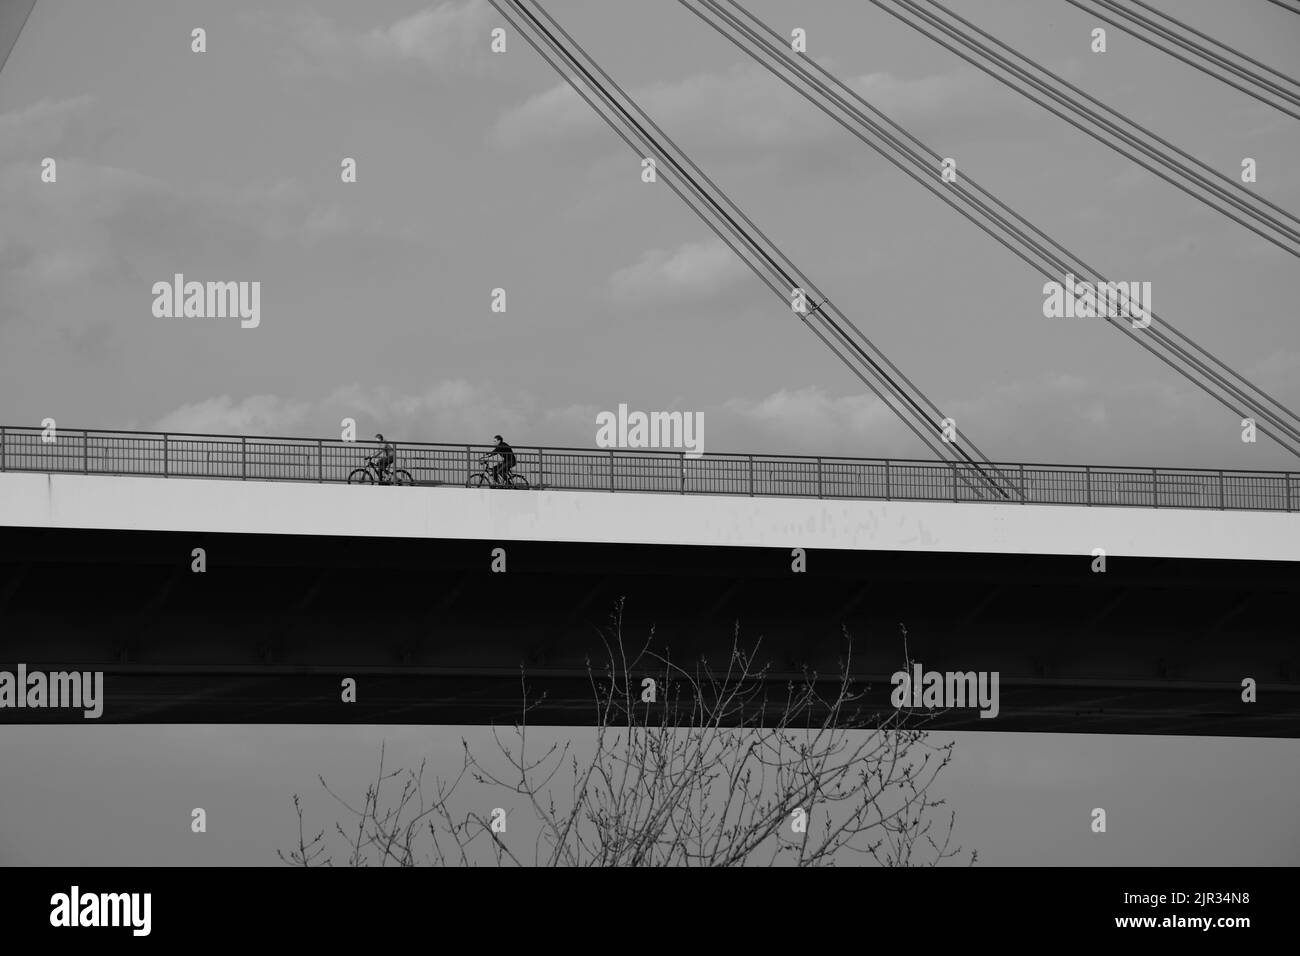 Deux cyclistes sur un pont autoroutier en niveaux de gris Banque D'Images